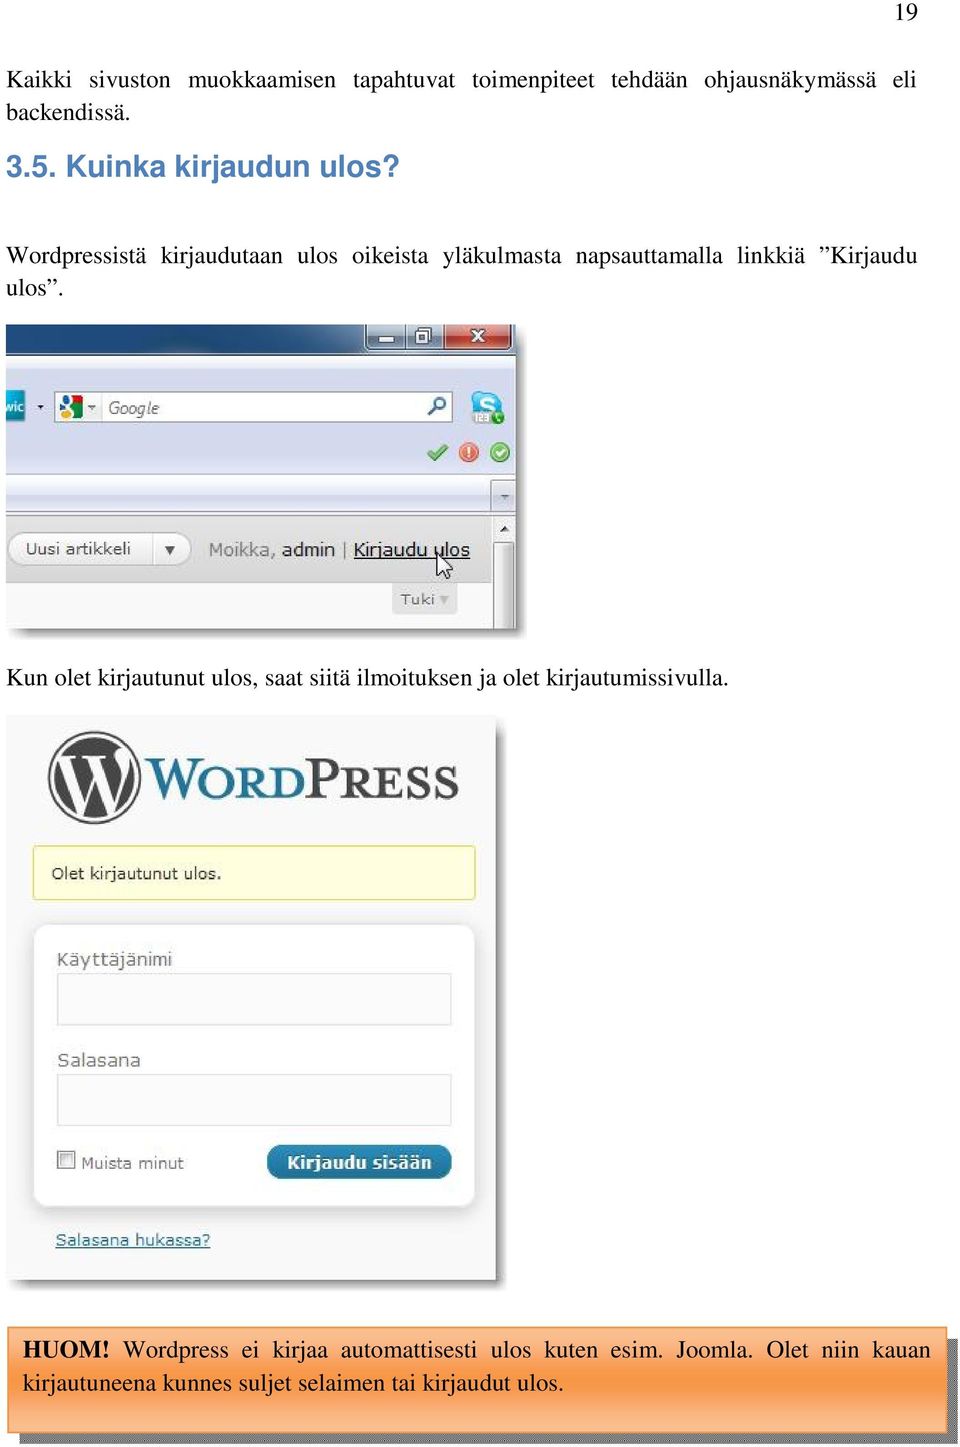 Wordpressistä kirjaudutaan ulos oikeista yläkulmasta napsauttamalla linkkiä Kirjaudu ulos.